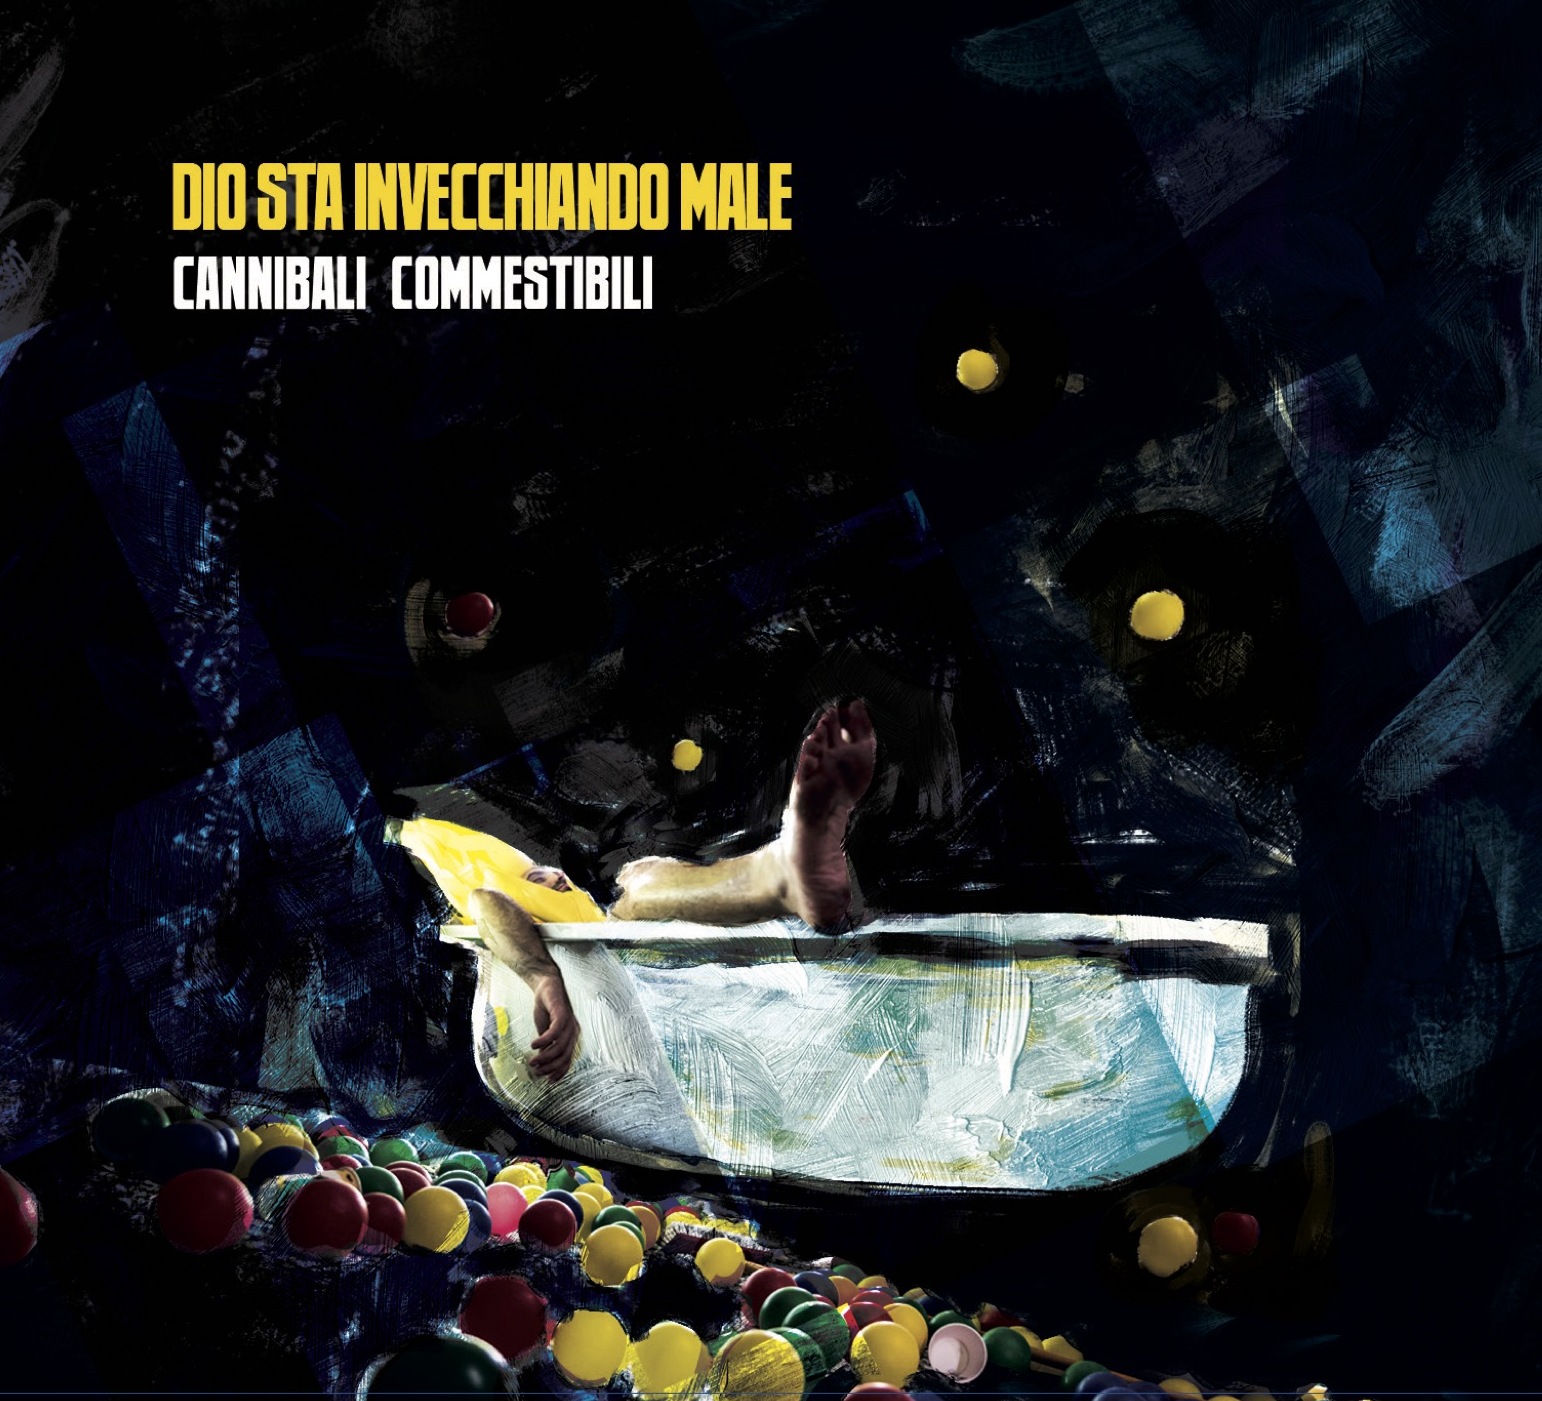 Al momento stai visualizzando “Dio sta invecchiando male”: il nuovo album dei Cannibali Commestibili